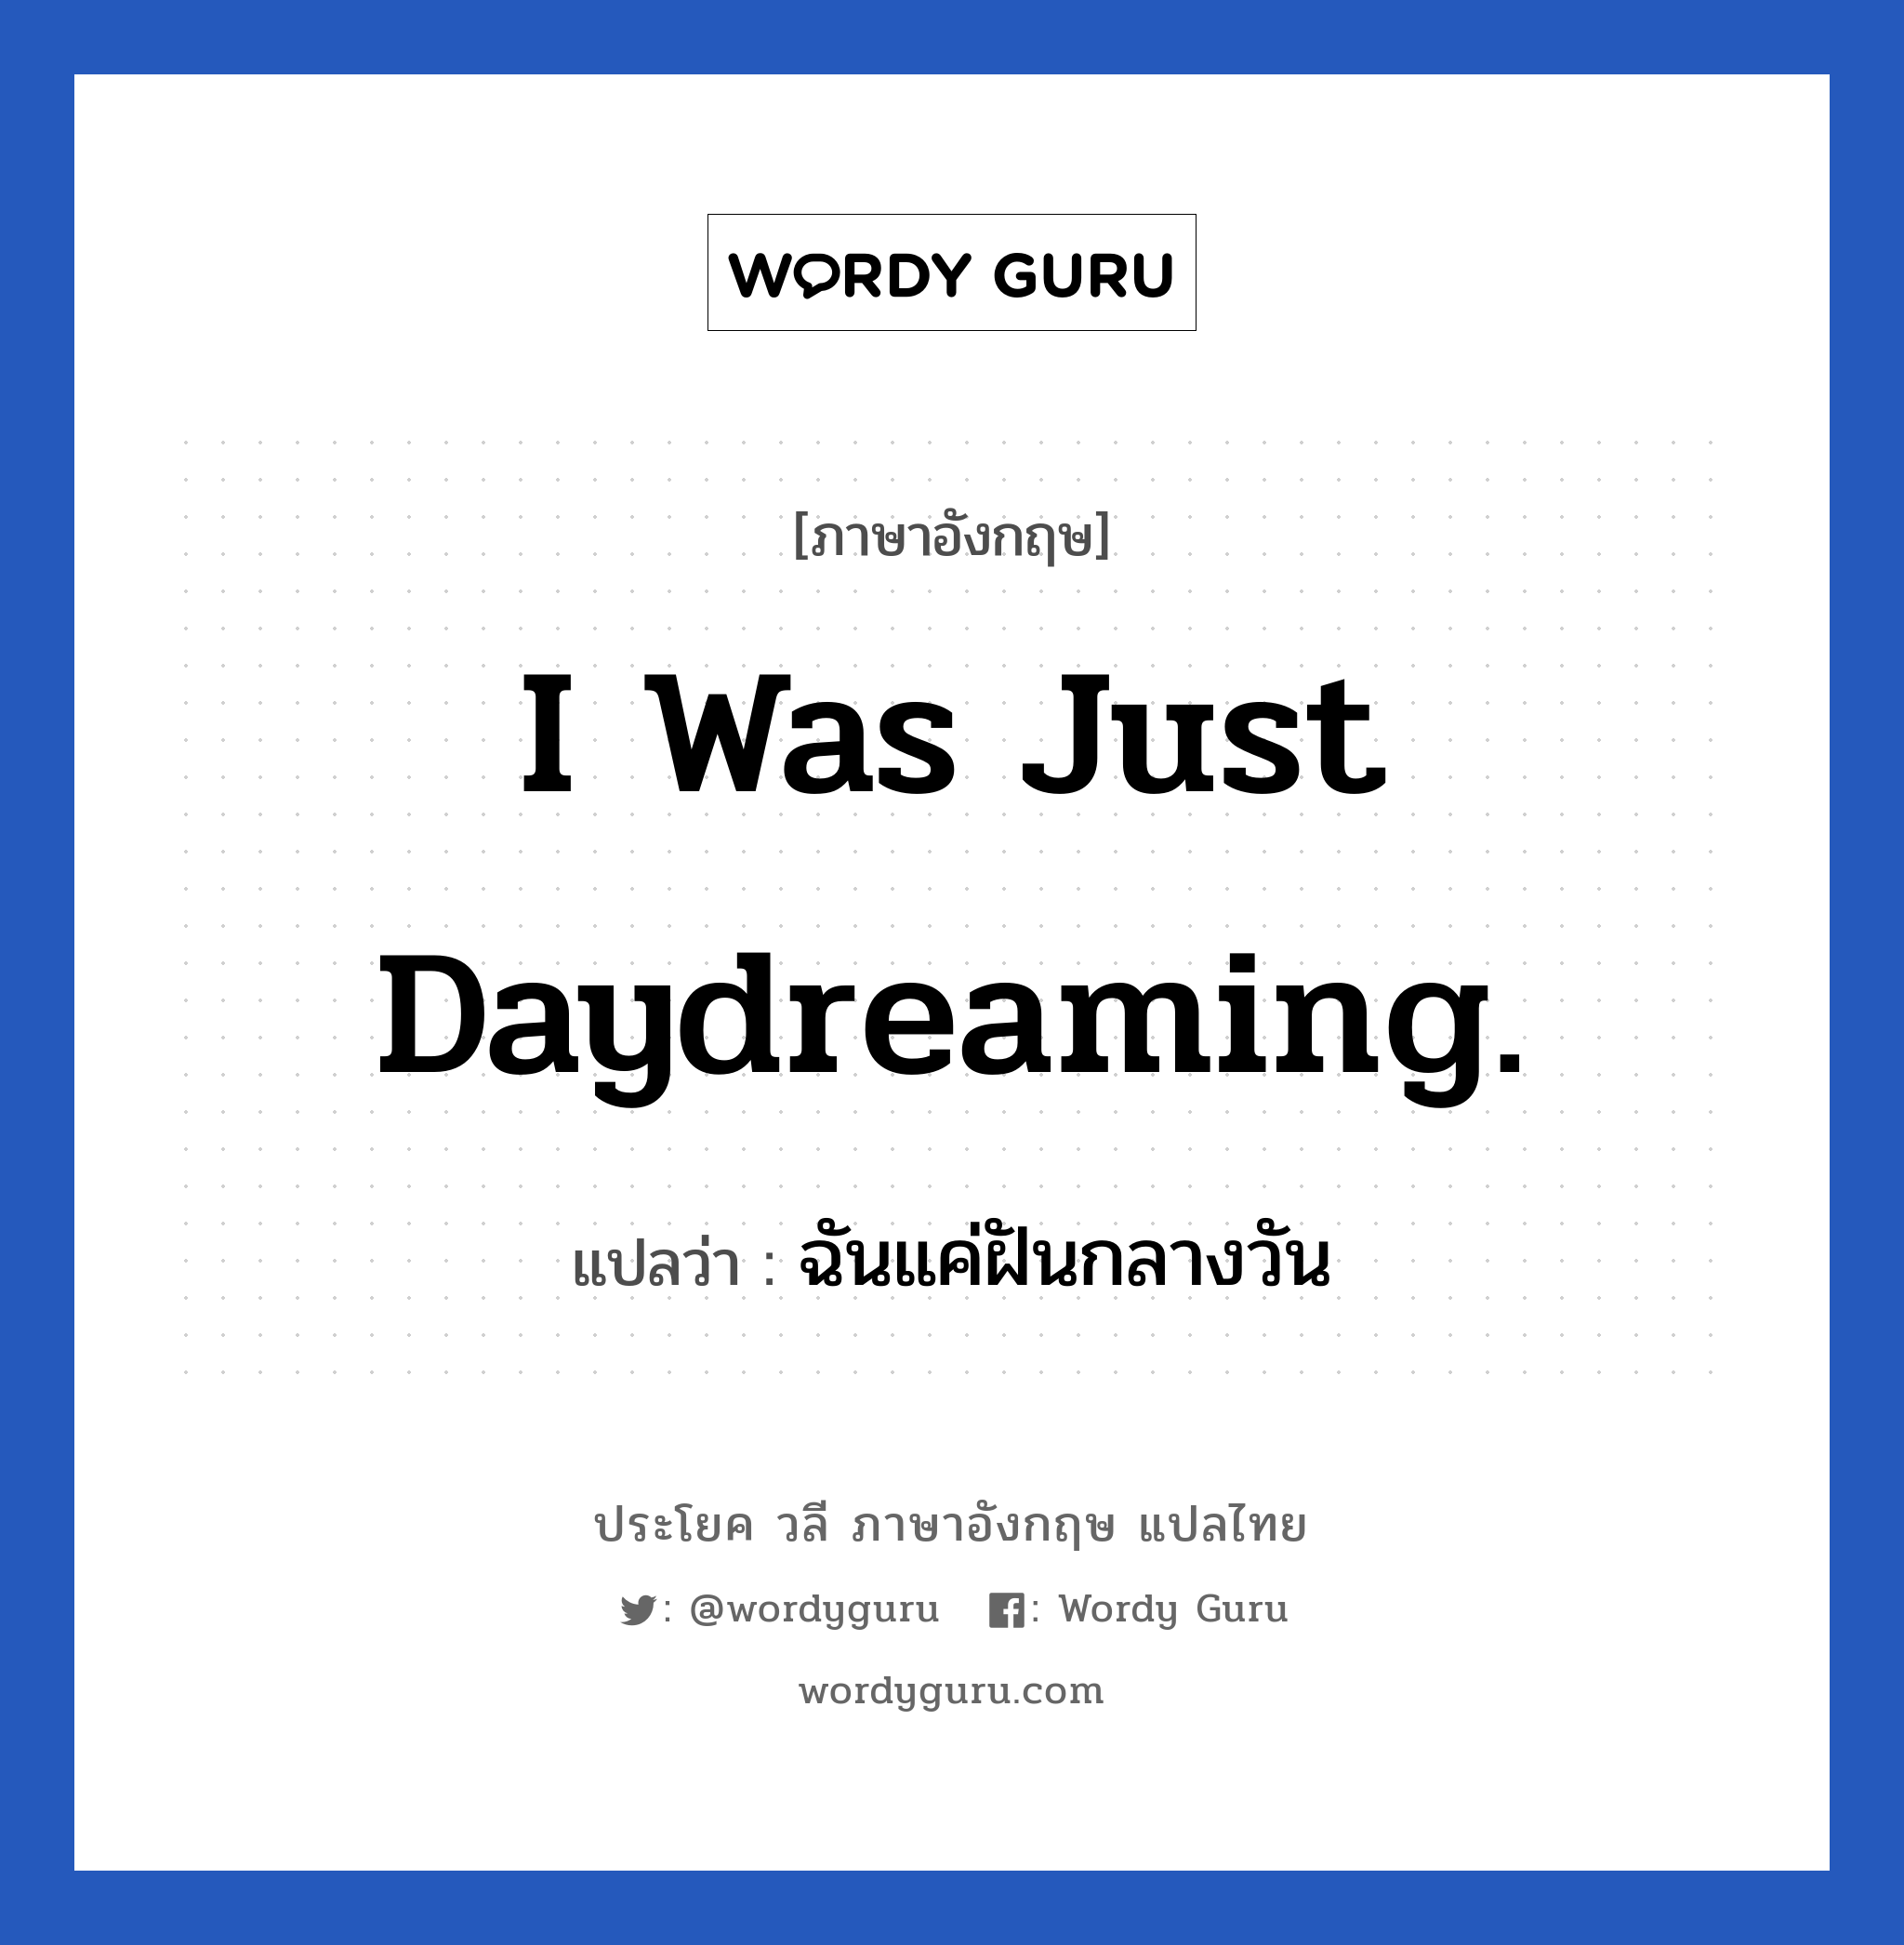 ฉันแค่ฝันกลางวัน ภาษาอังกฤษ?, วลีภาษาอังกฤษ ฉันแค่ฝันกลางวัน แปลว่า I was just daydreaming.